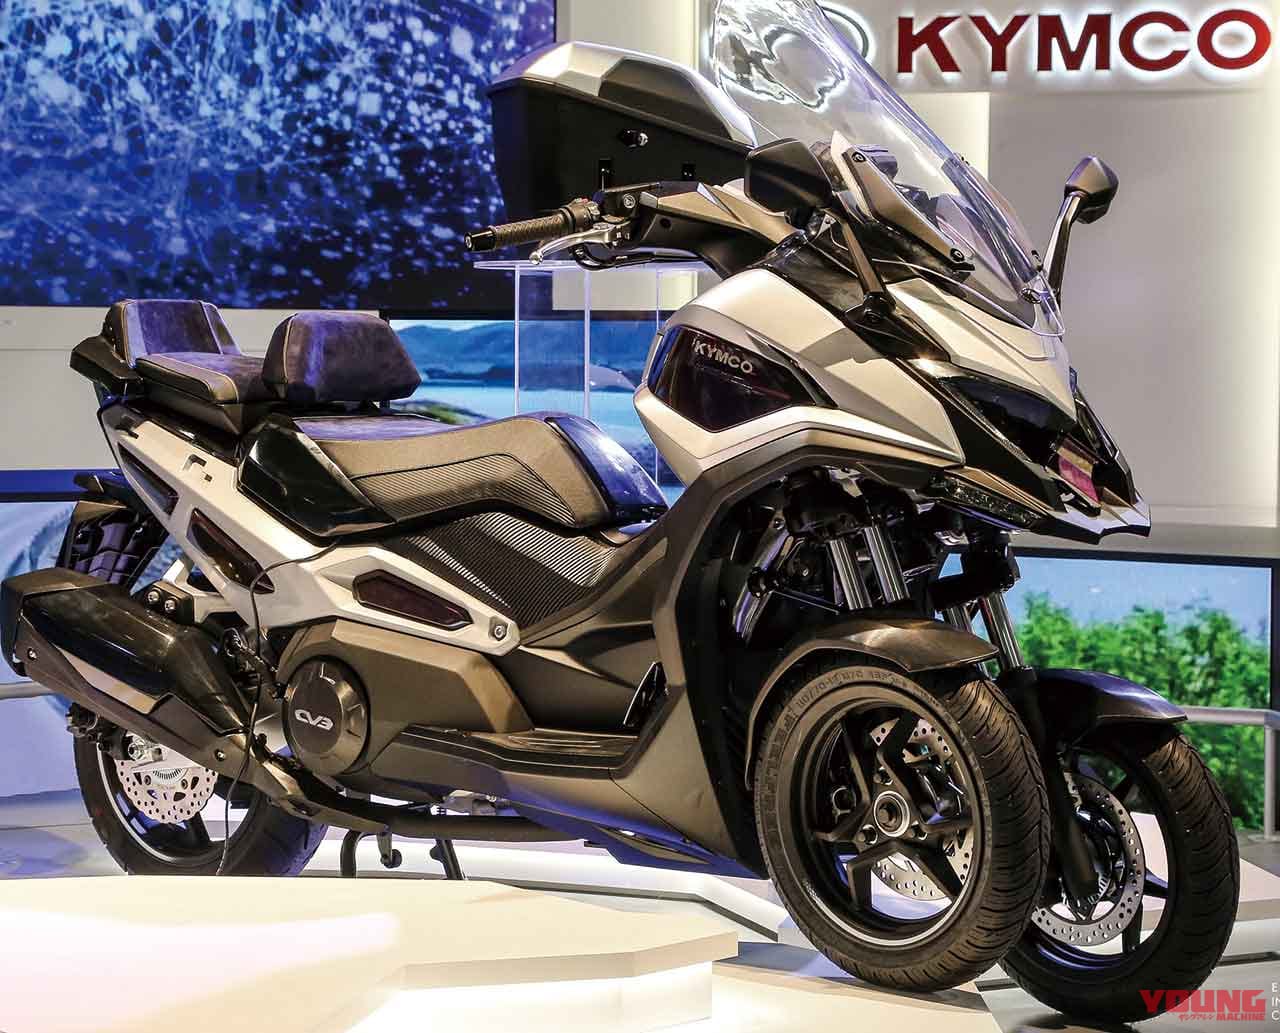 新車バイク総覧 スクーター 外国車 3 3 キムコ Sym タイホンダ Webヤングマシン 最新バイク情報